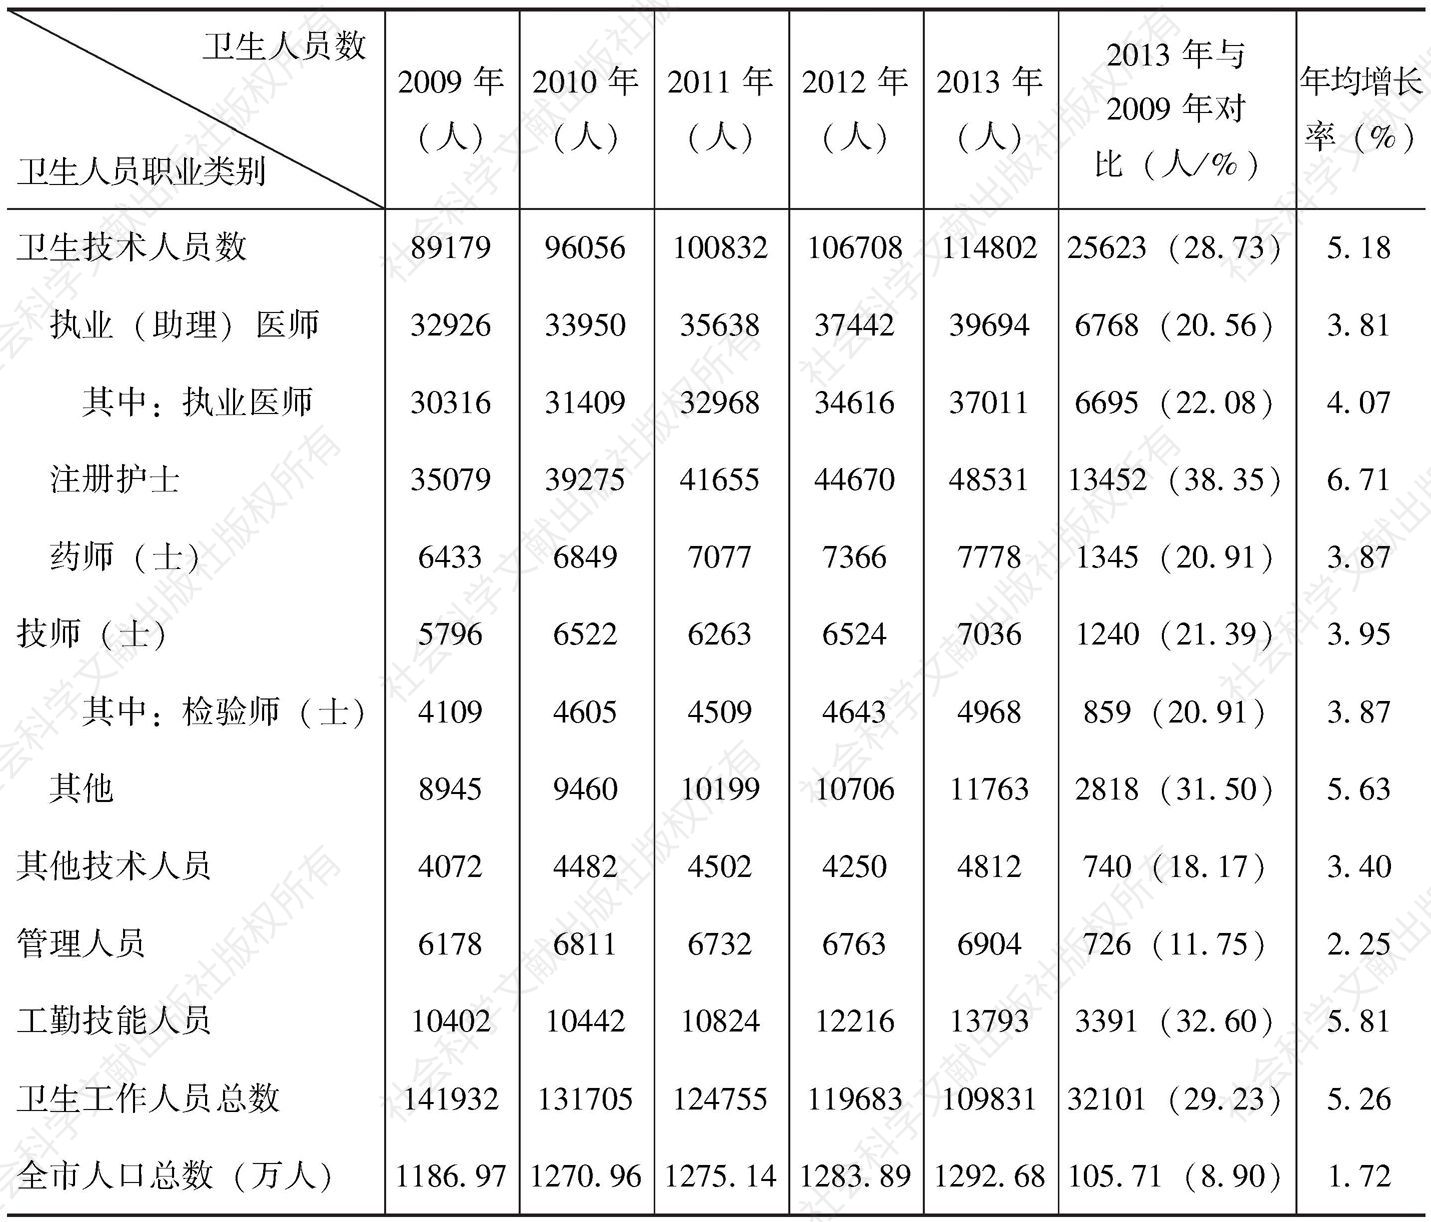 表6-3 2009～2013年广州地区卫生人员构成情况